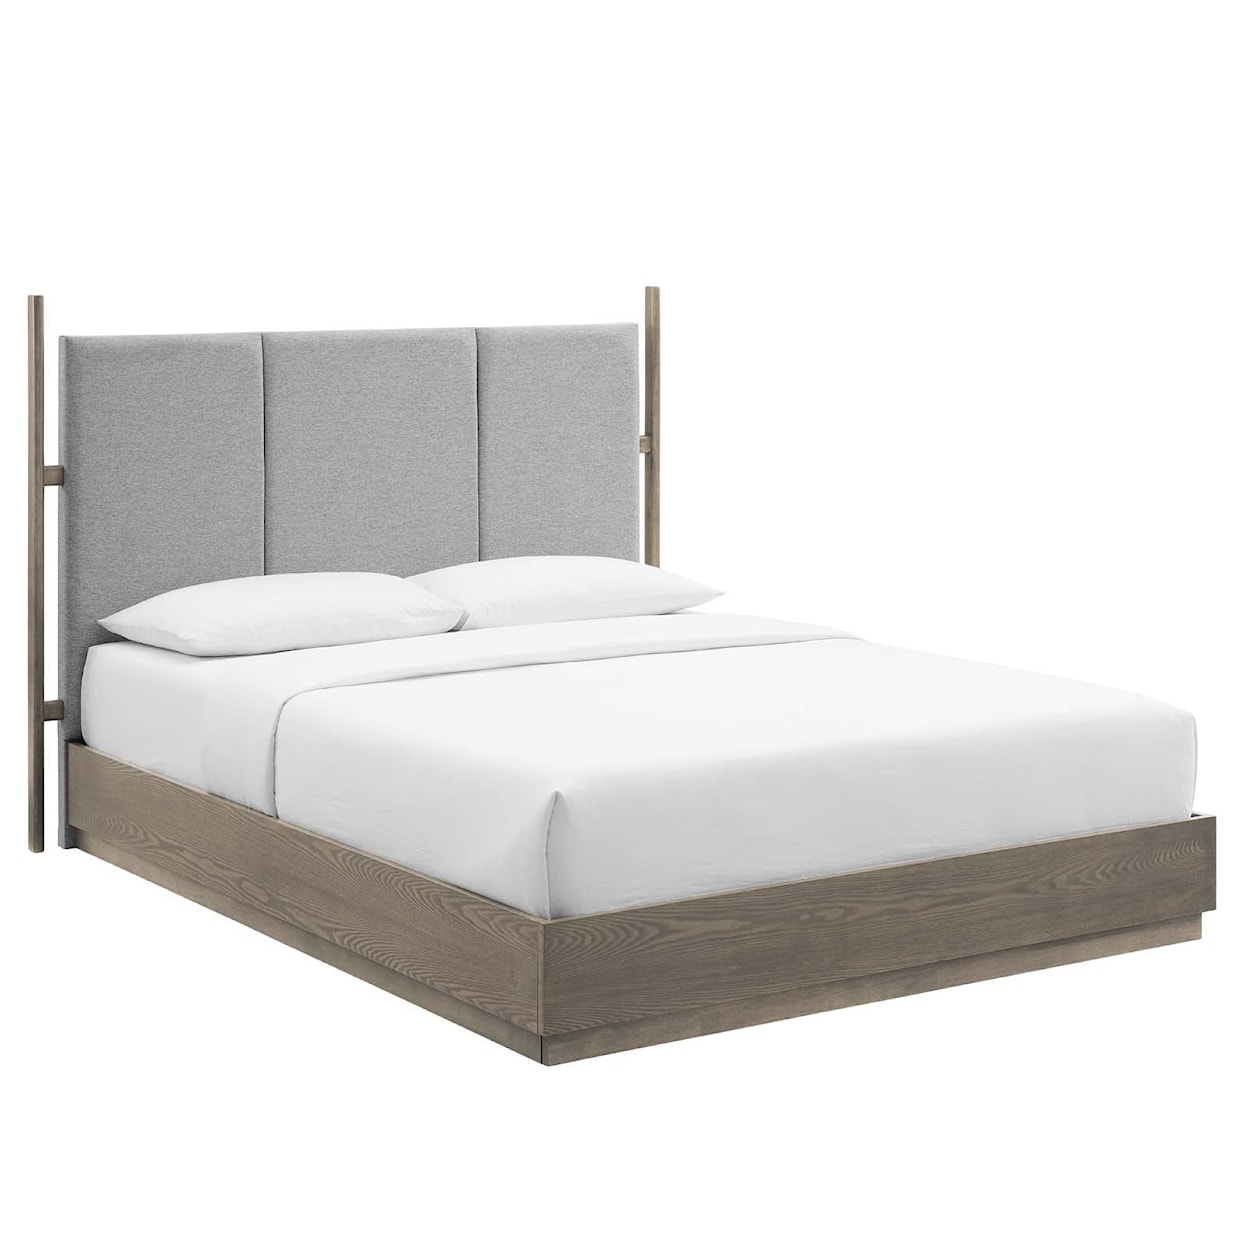 Modway Merritt Merritt 4 Piece Upholstered Bedroom Set